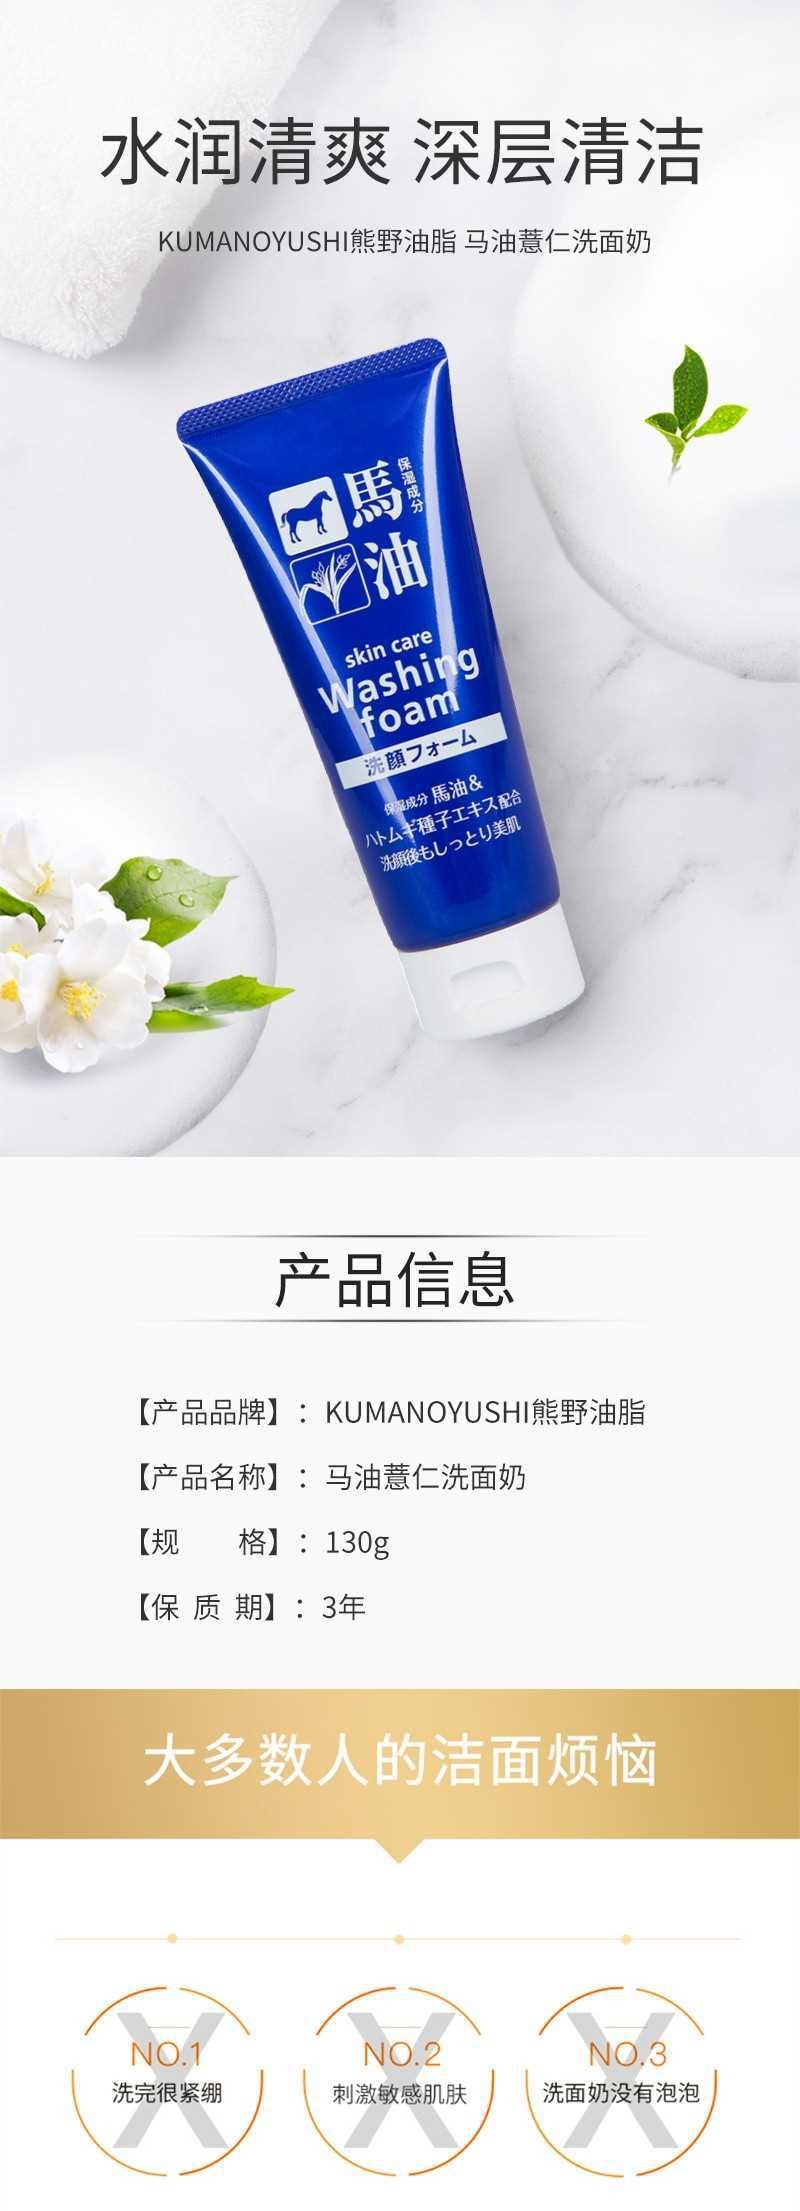 【日本直邮】KUMANO熊野油脂 马油薏仁洗面奶130g